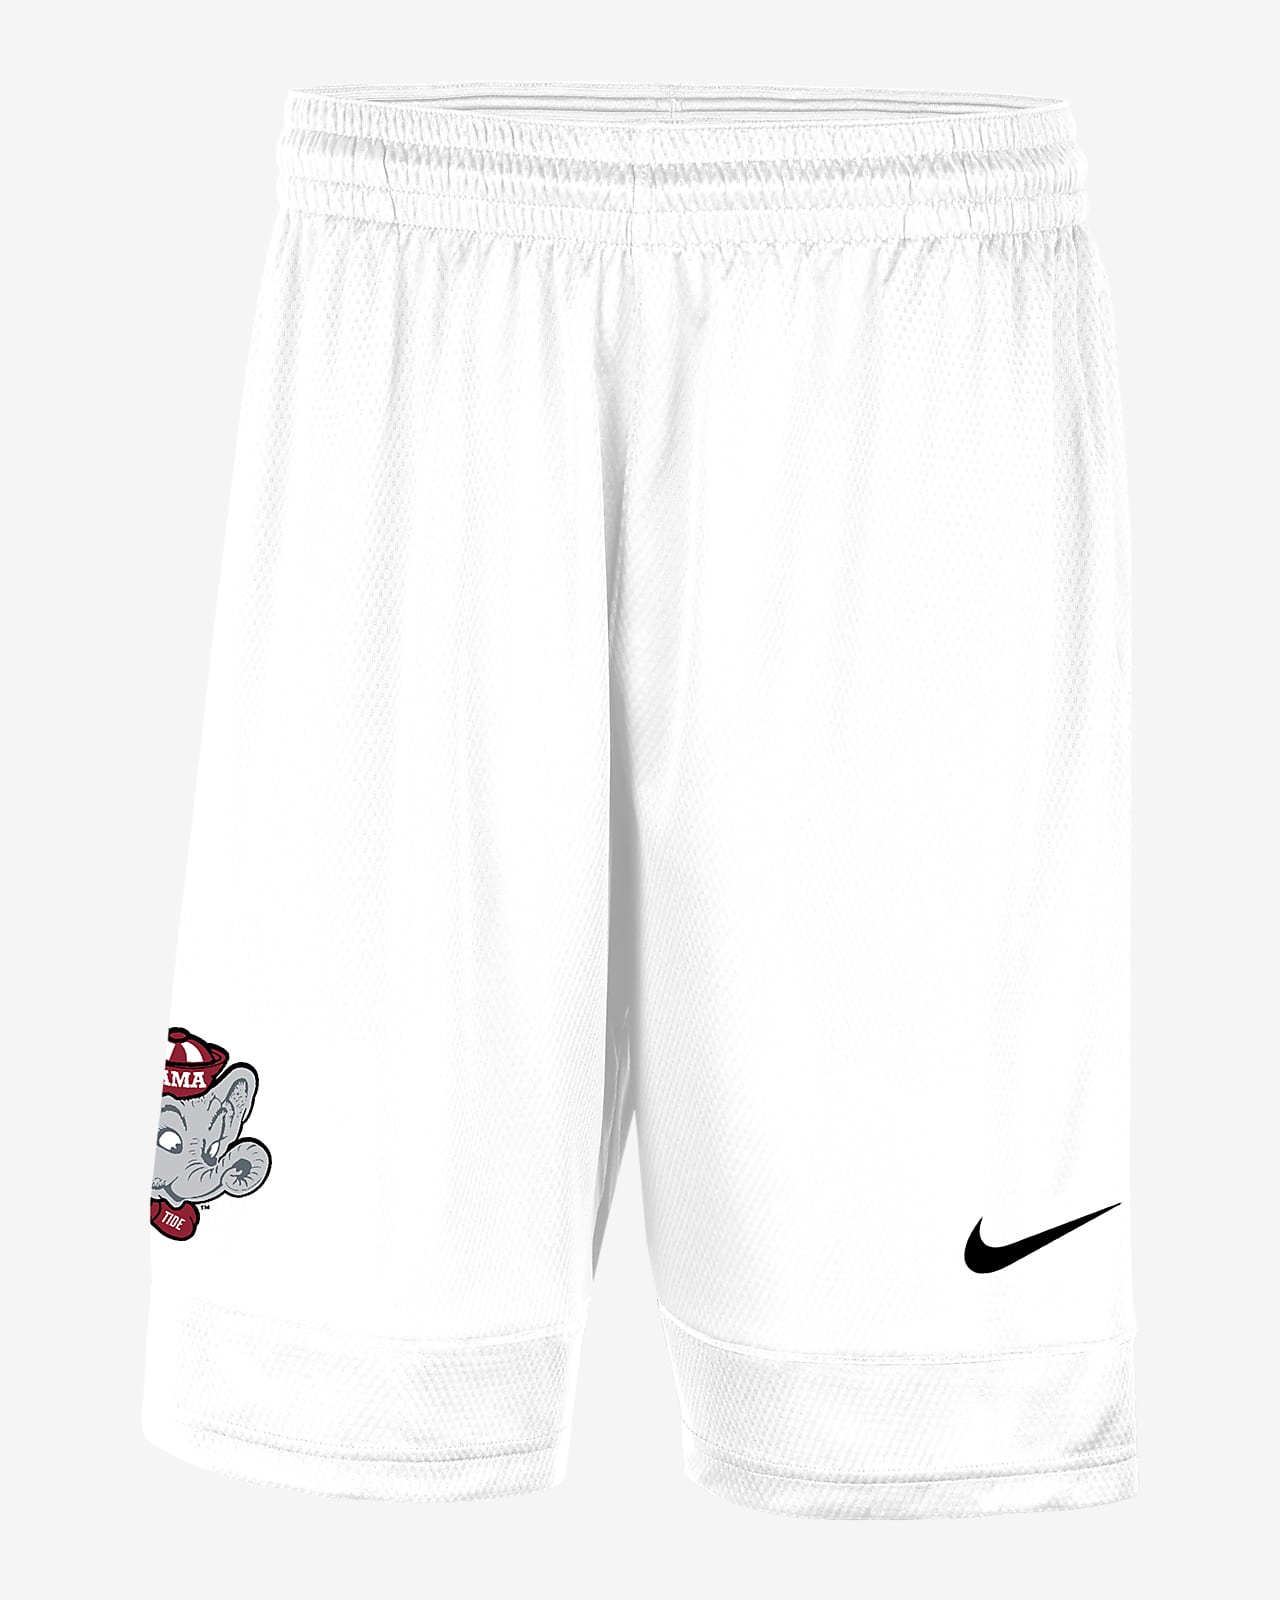 Alabama Men's Nike College Shorts